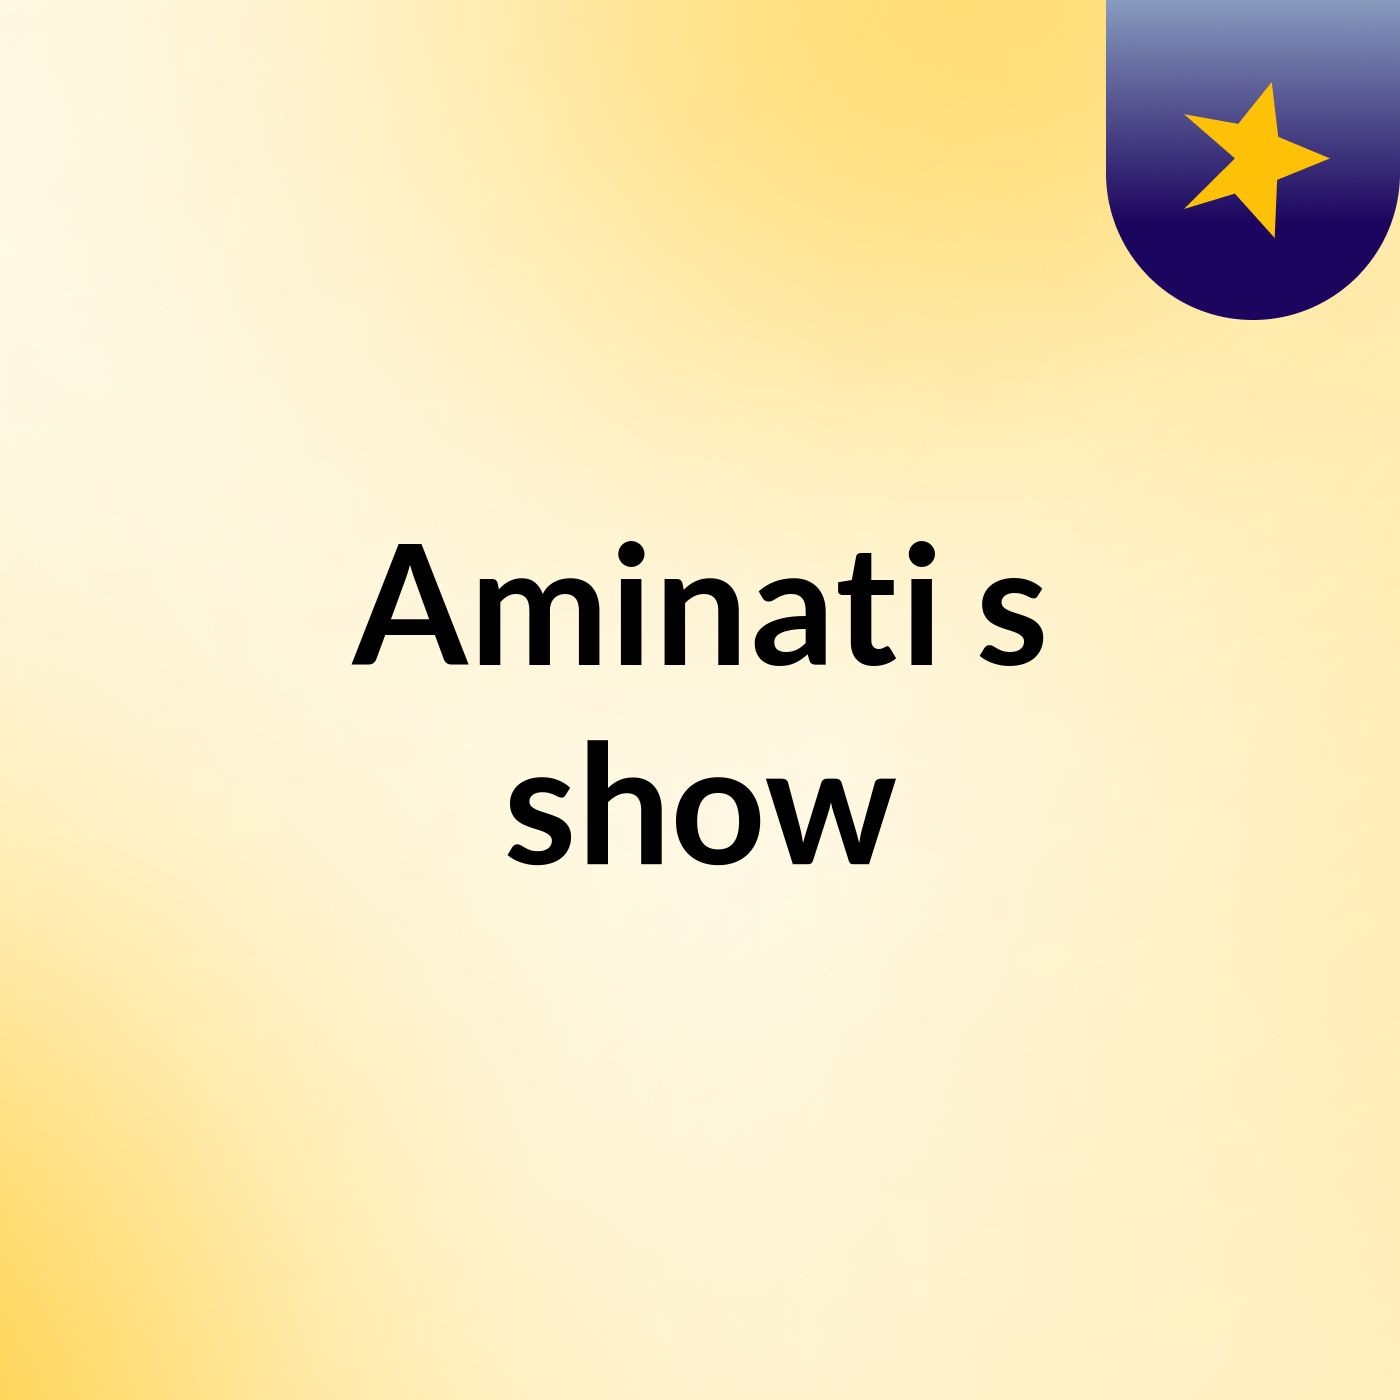 Aminati's show